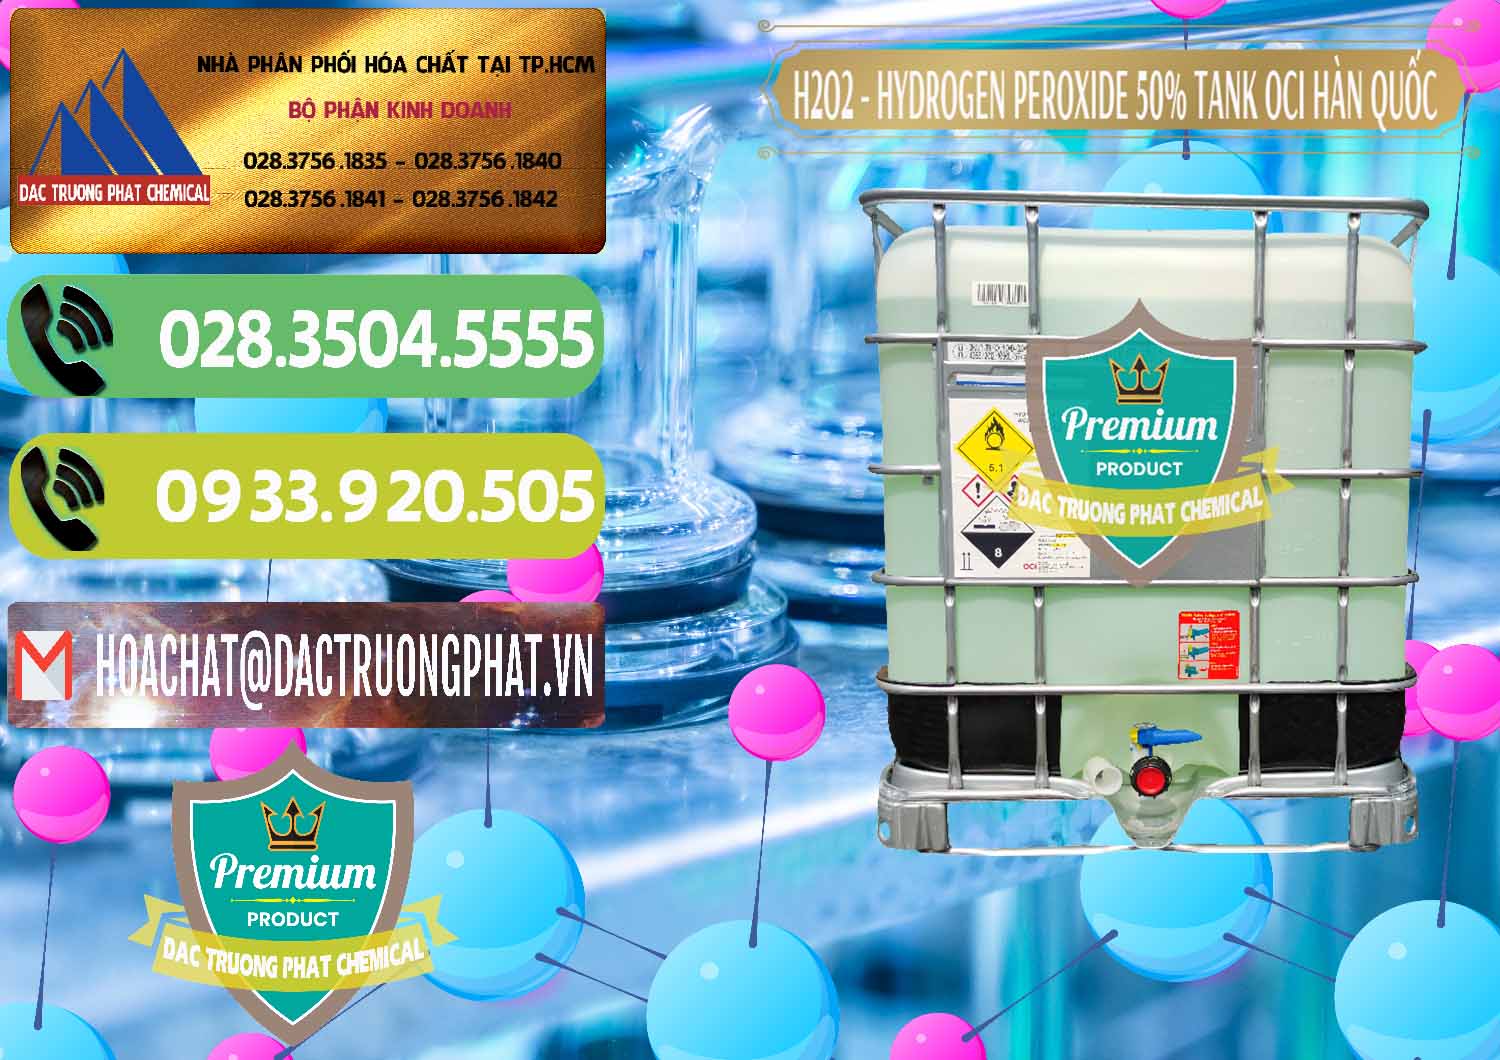 Đơn vị chuyên kinh doanh ( bán ) H2O2 - Hydrogen Peroxide 50% Tank IBC Bồn Hàn Quốc OCI - 0074 - Cty nhập khẩu _ cung cấp hóa chất tại TP.HCM - hoachatmientay.vn